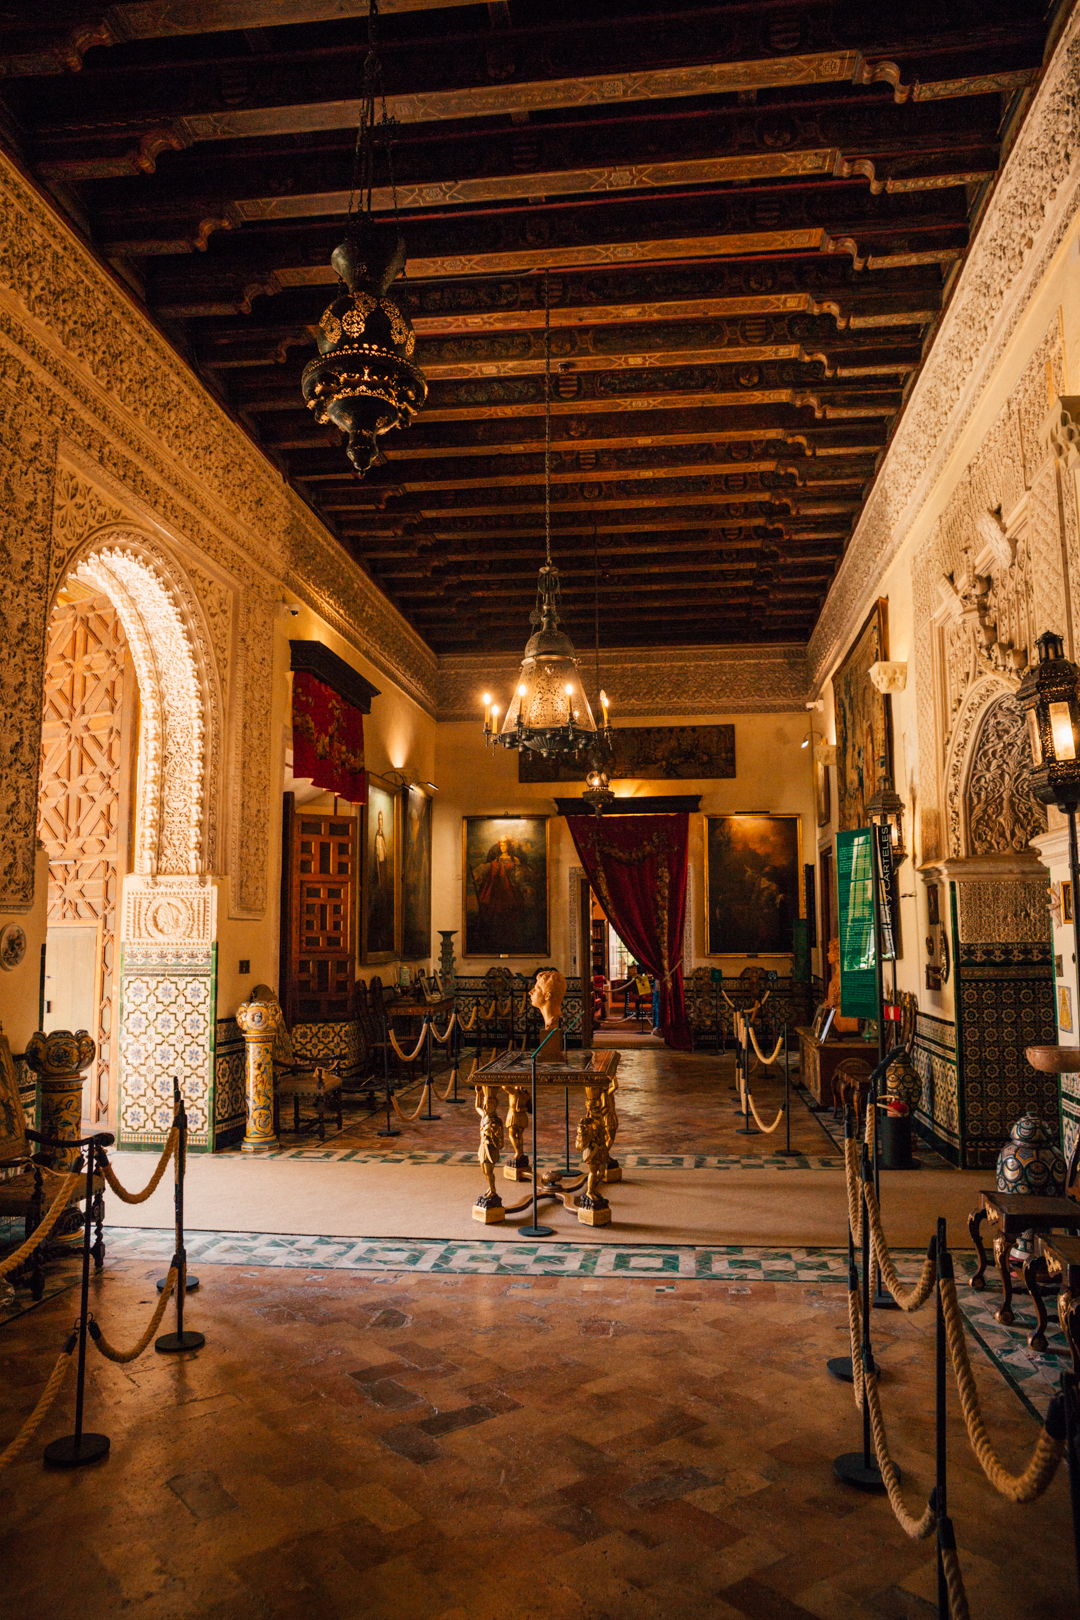 Palacio de las Dueñas, Seville